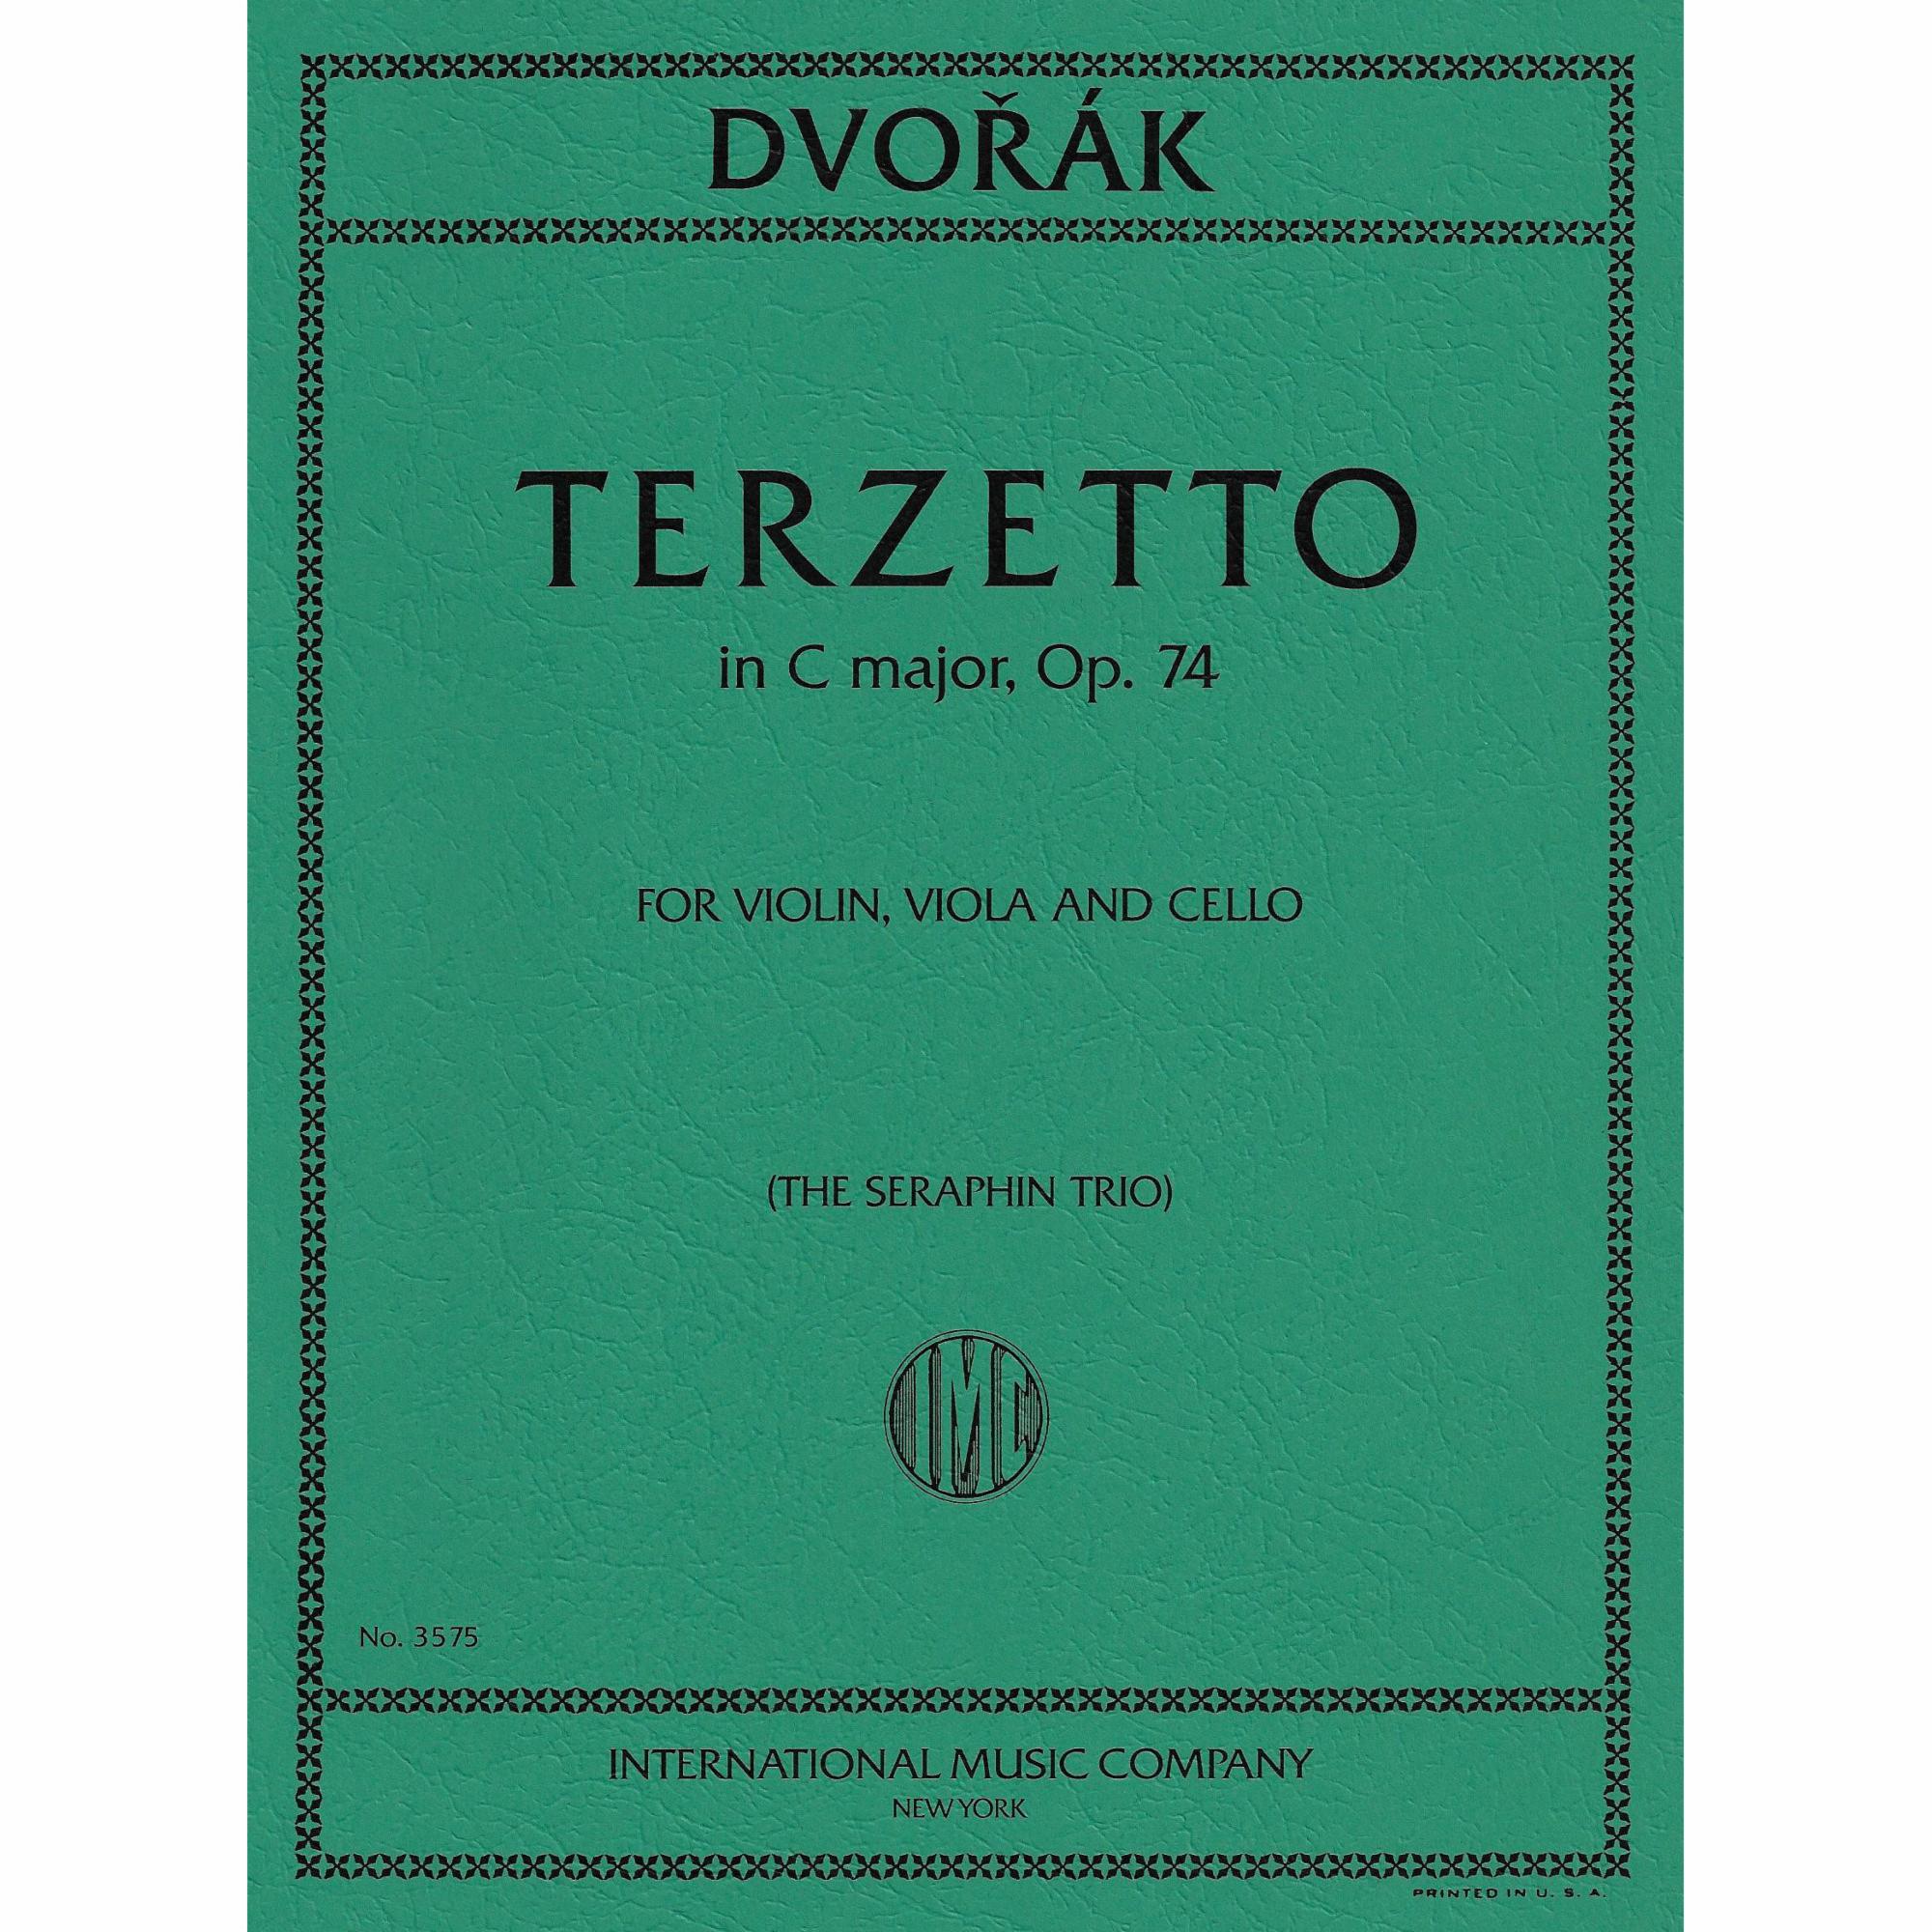 Dvorak -- Terzetto in C Major, Op. 74 for Violin, Viola, and Cello